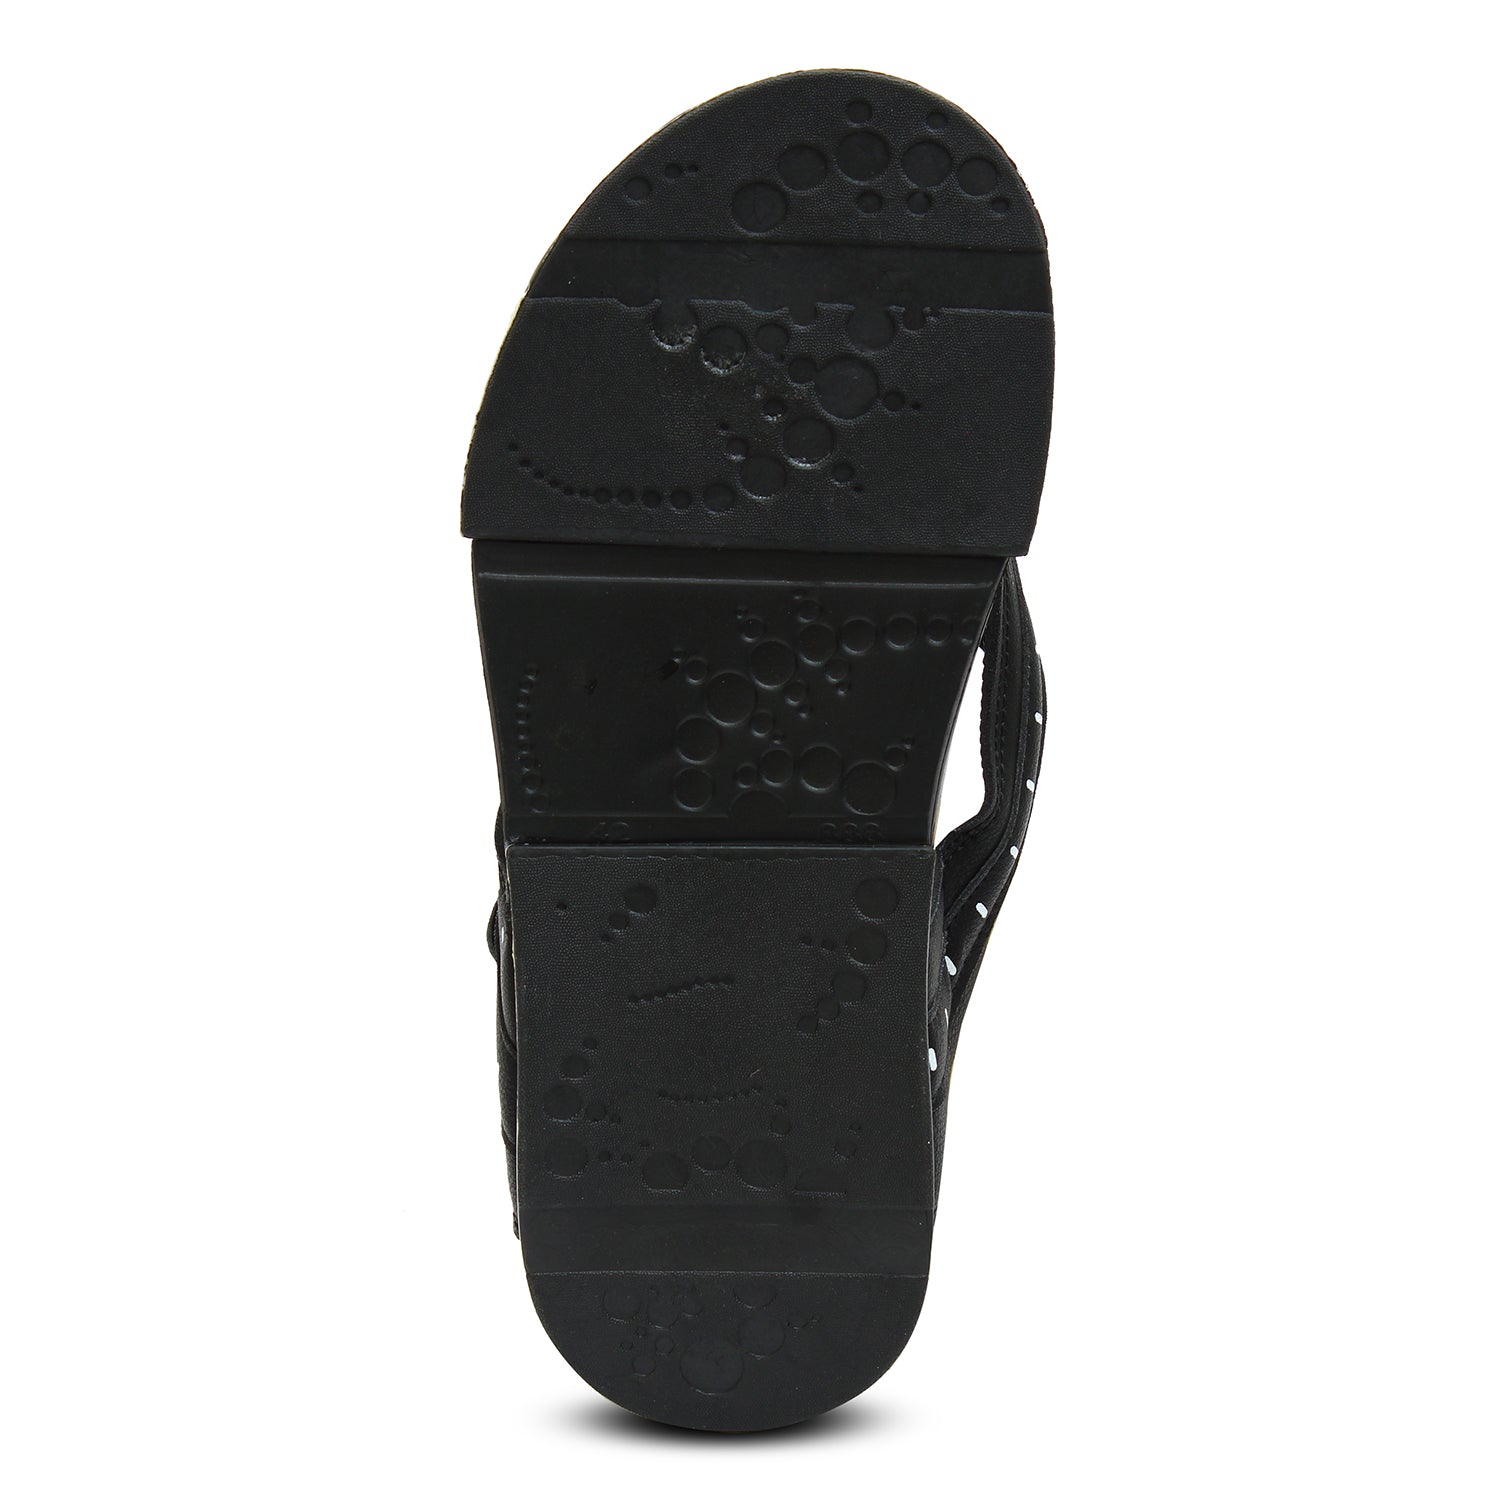 Flat Slippers For Men's Black White